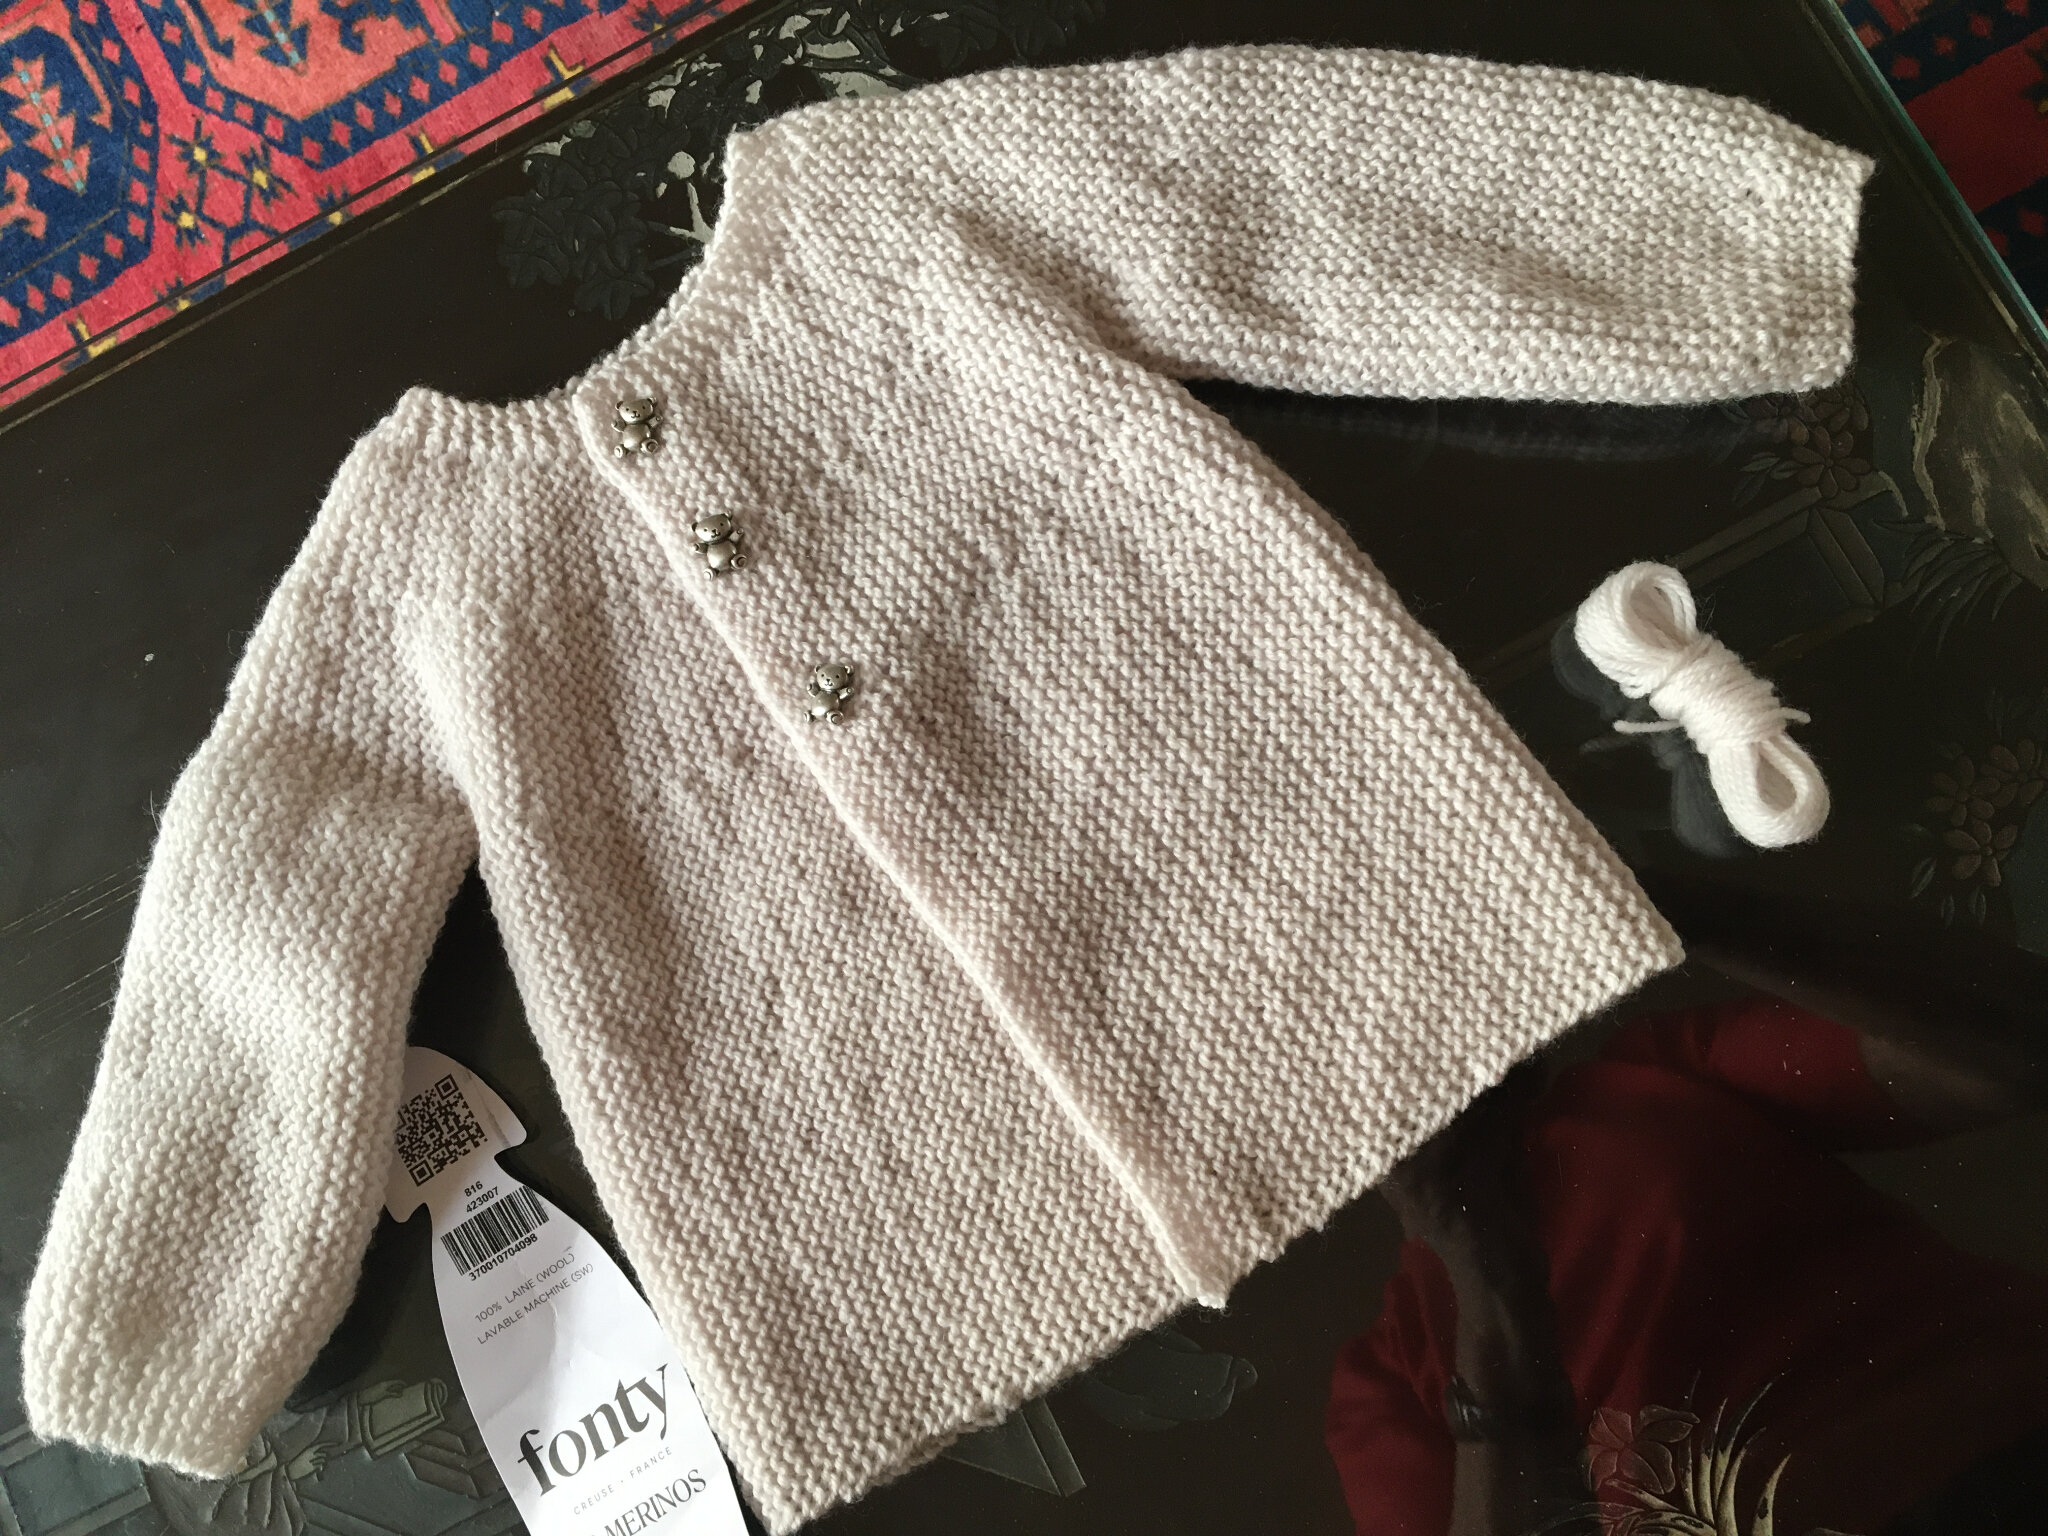 Brassière bébé rose en laine mérinos tricotée